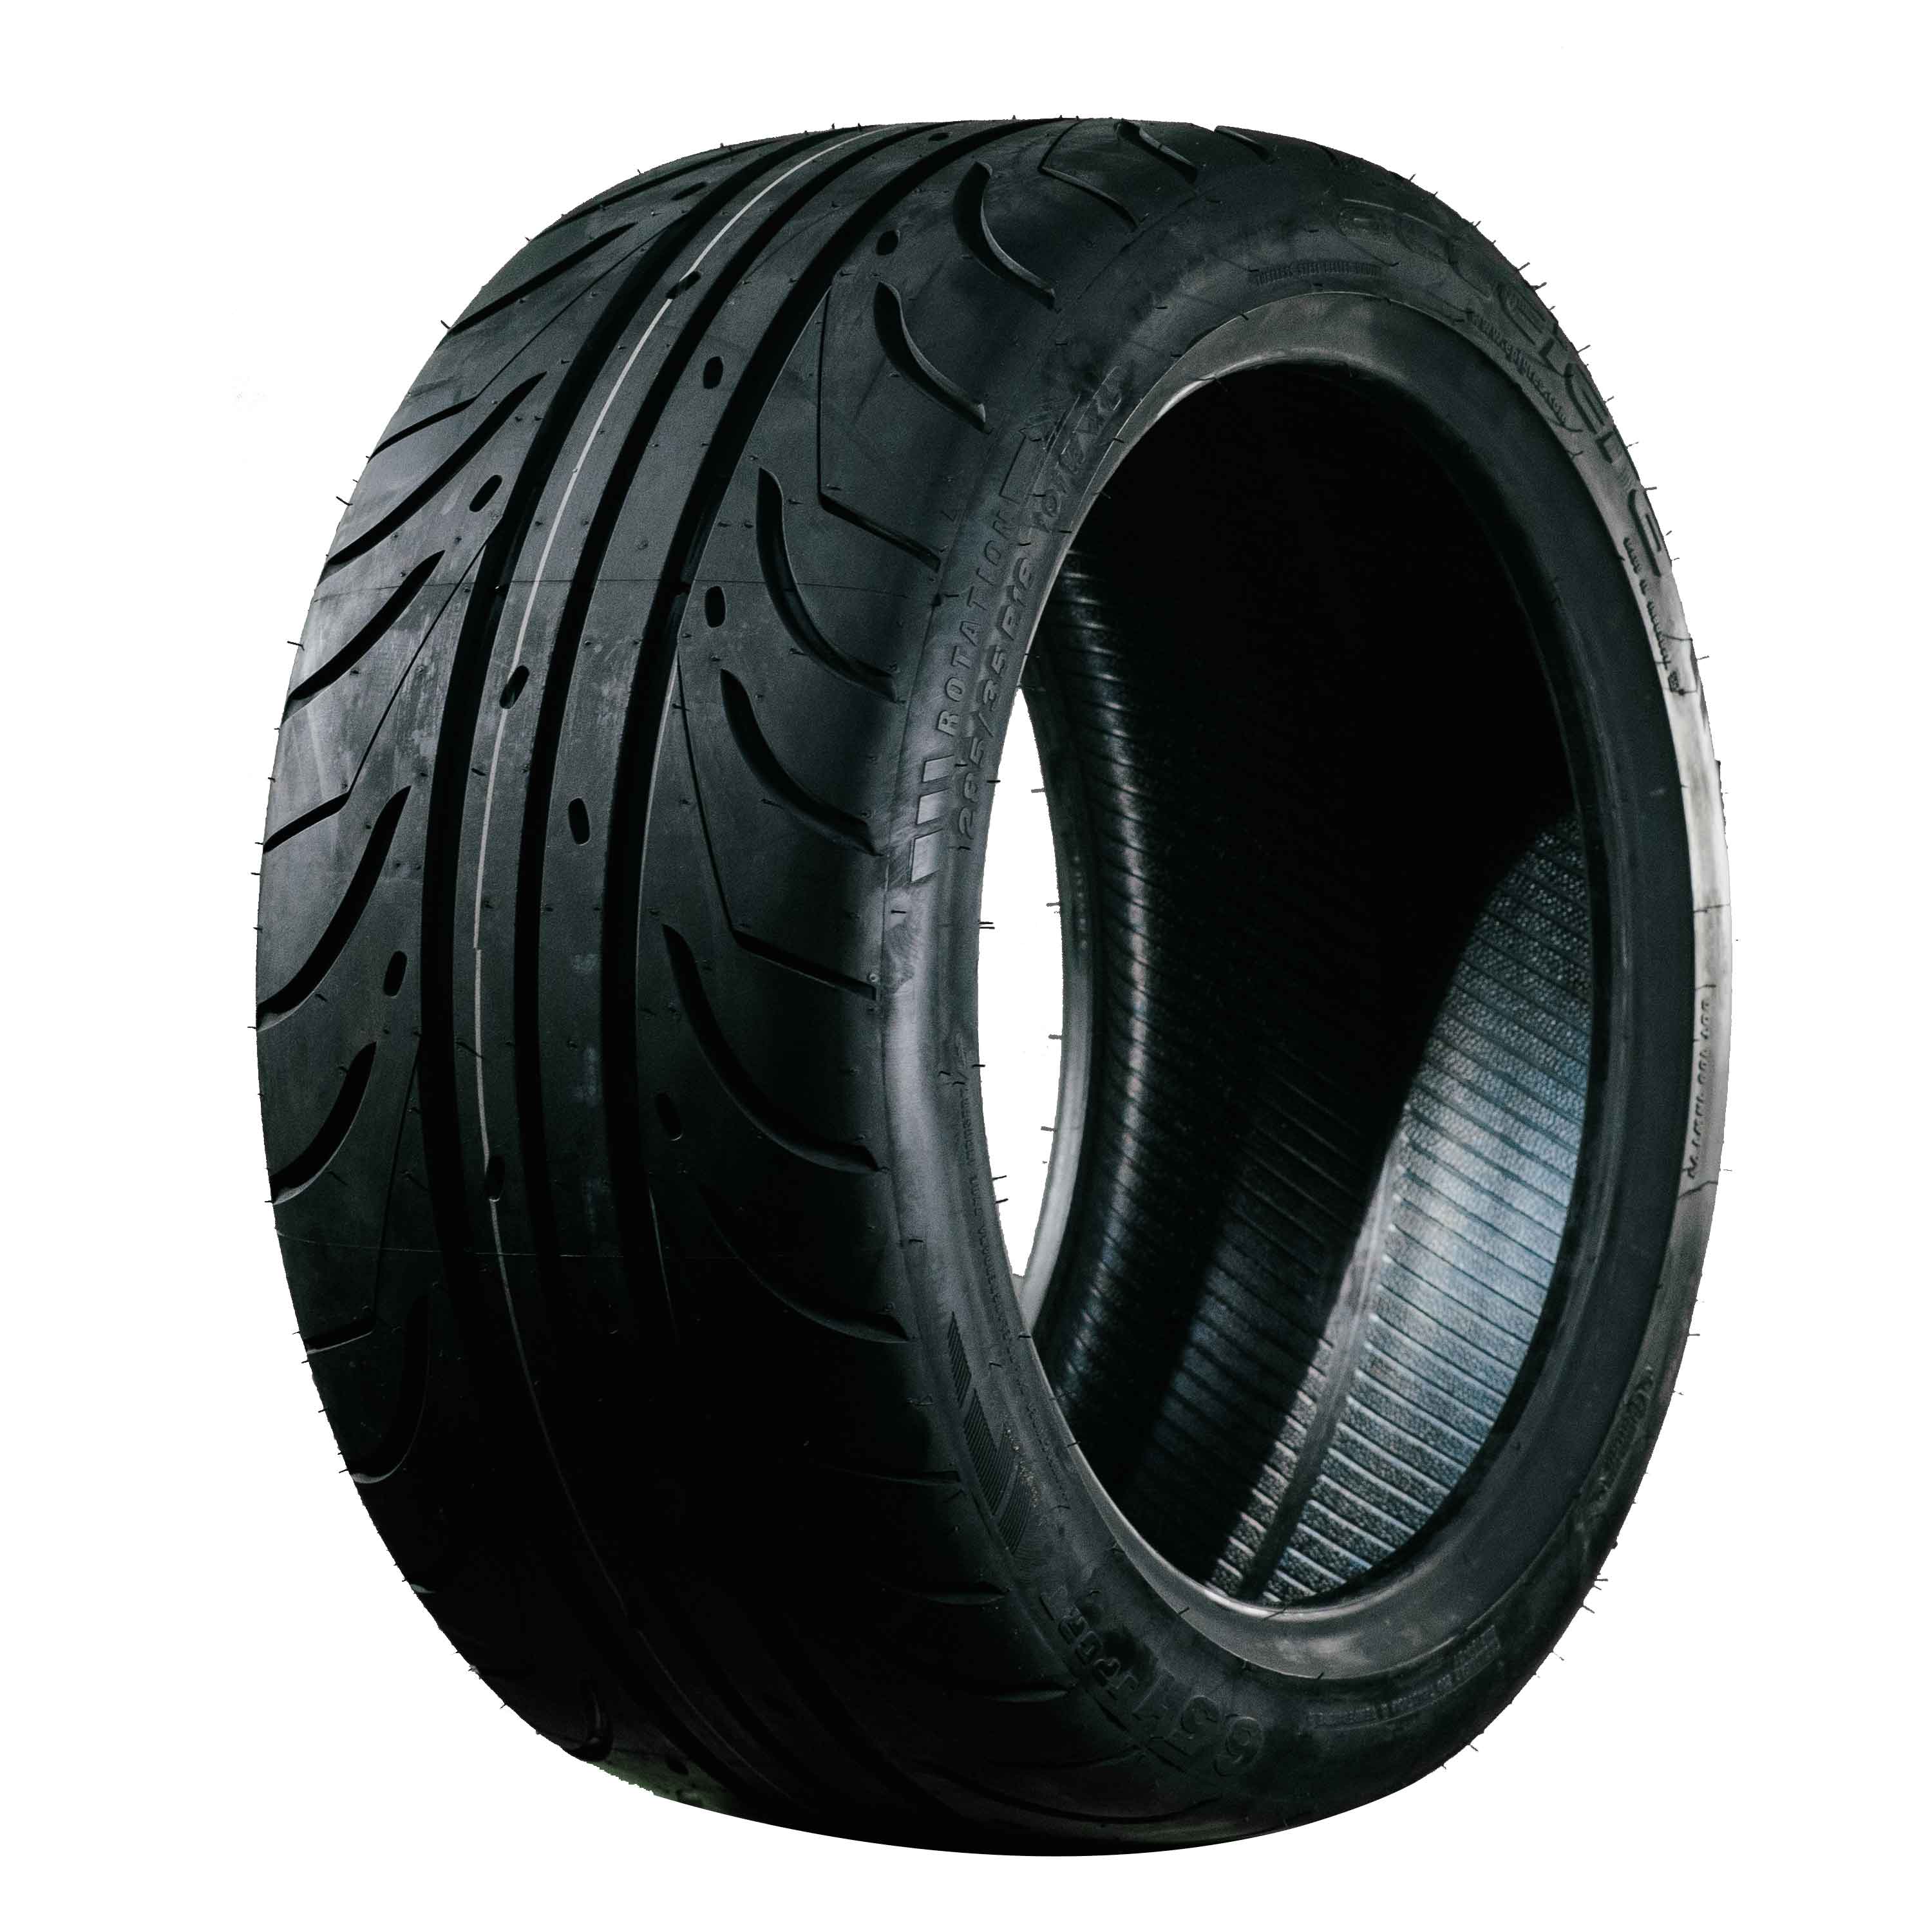 Front tire profiles: 40 vs. 45 vs. 50 vs. 55